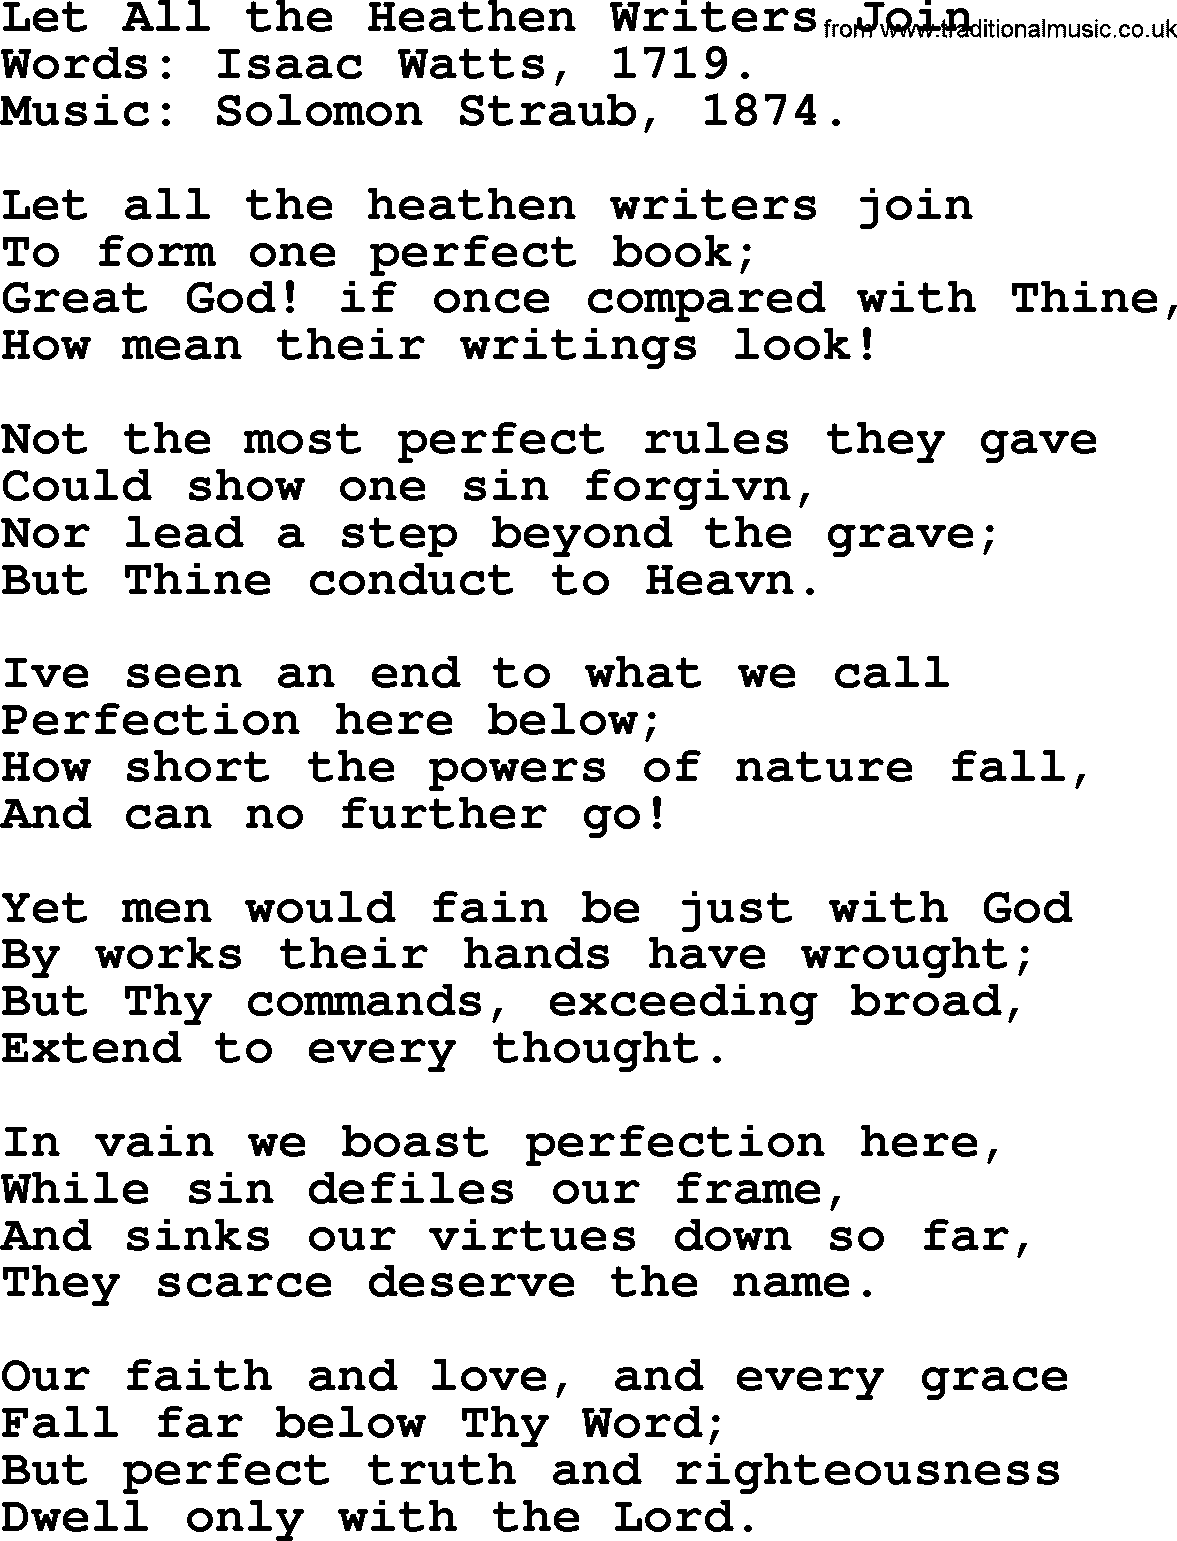 Isaac Watts Christian hymn: Let All the Heathen Writers Join- lyricss